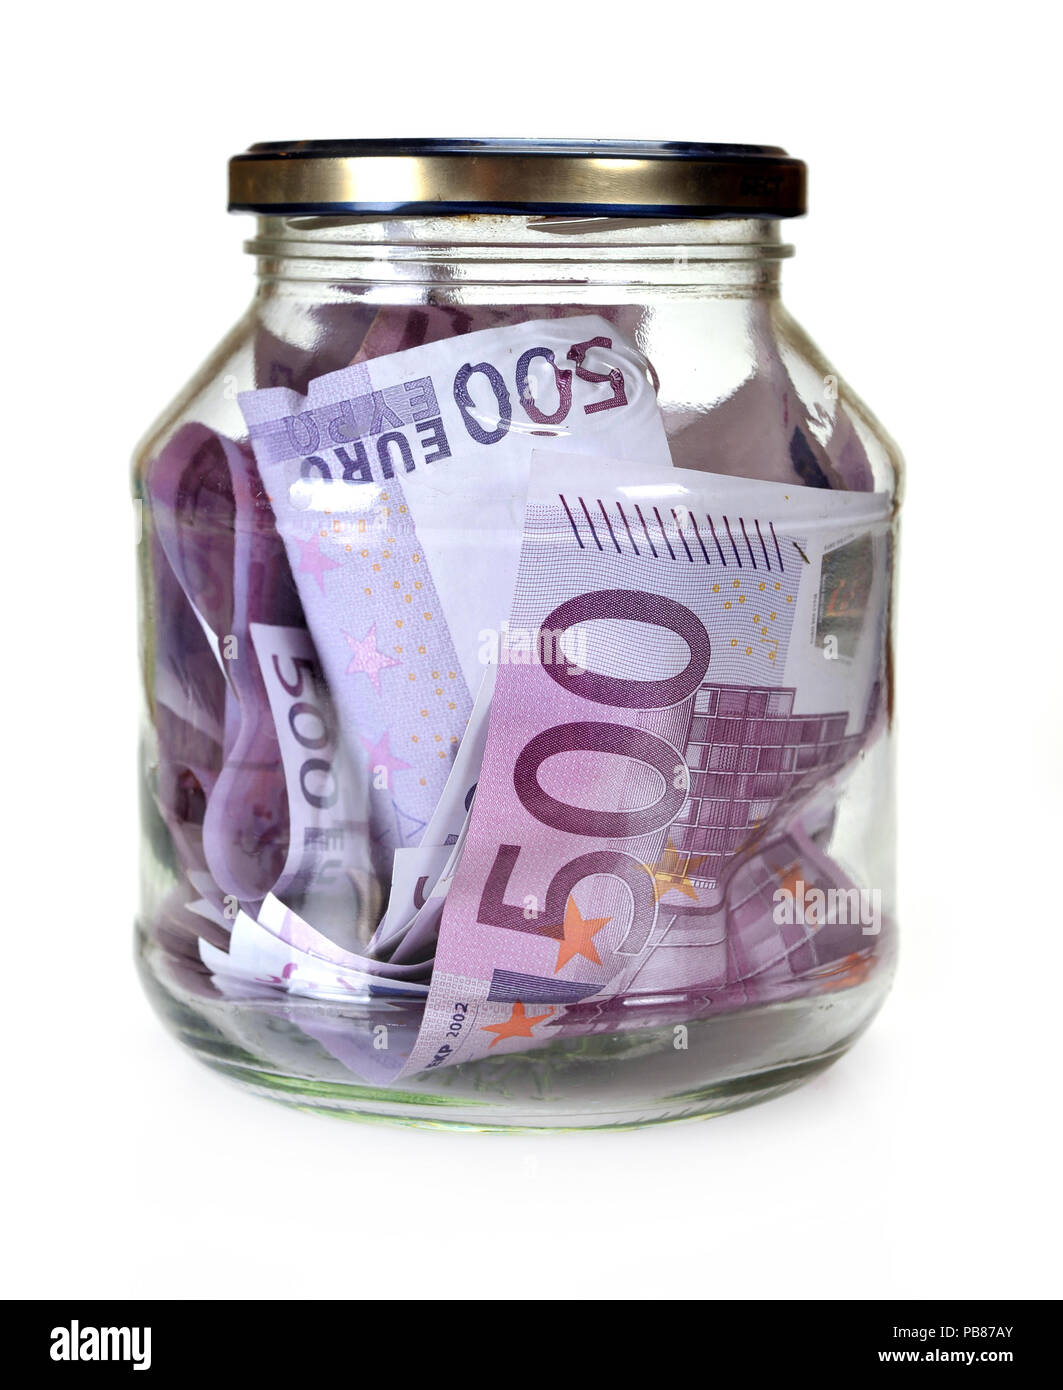 Сколько можно евро в банке. Евро в банке. Евро деньги в банке. Банка с деньгами евро. Деньги в стеклянной банке.